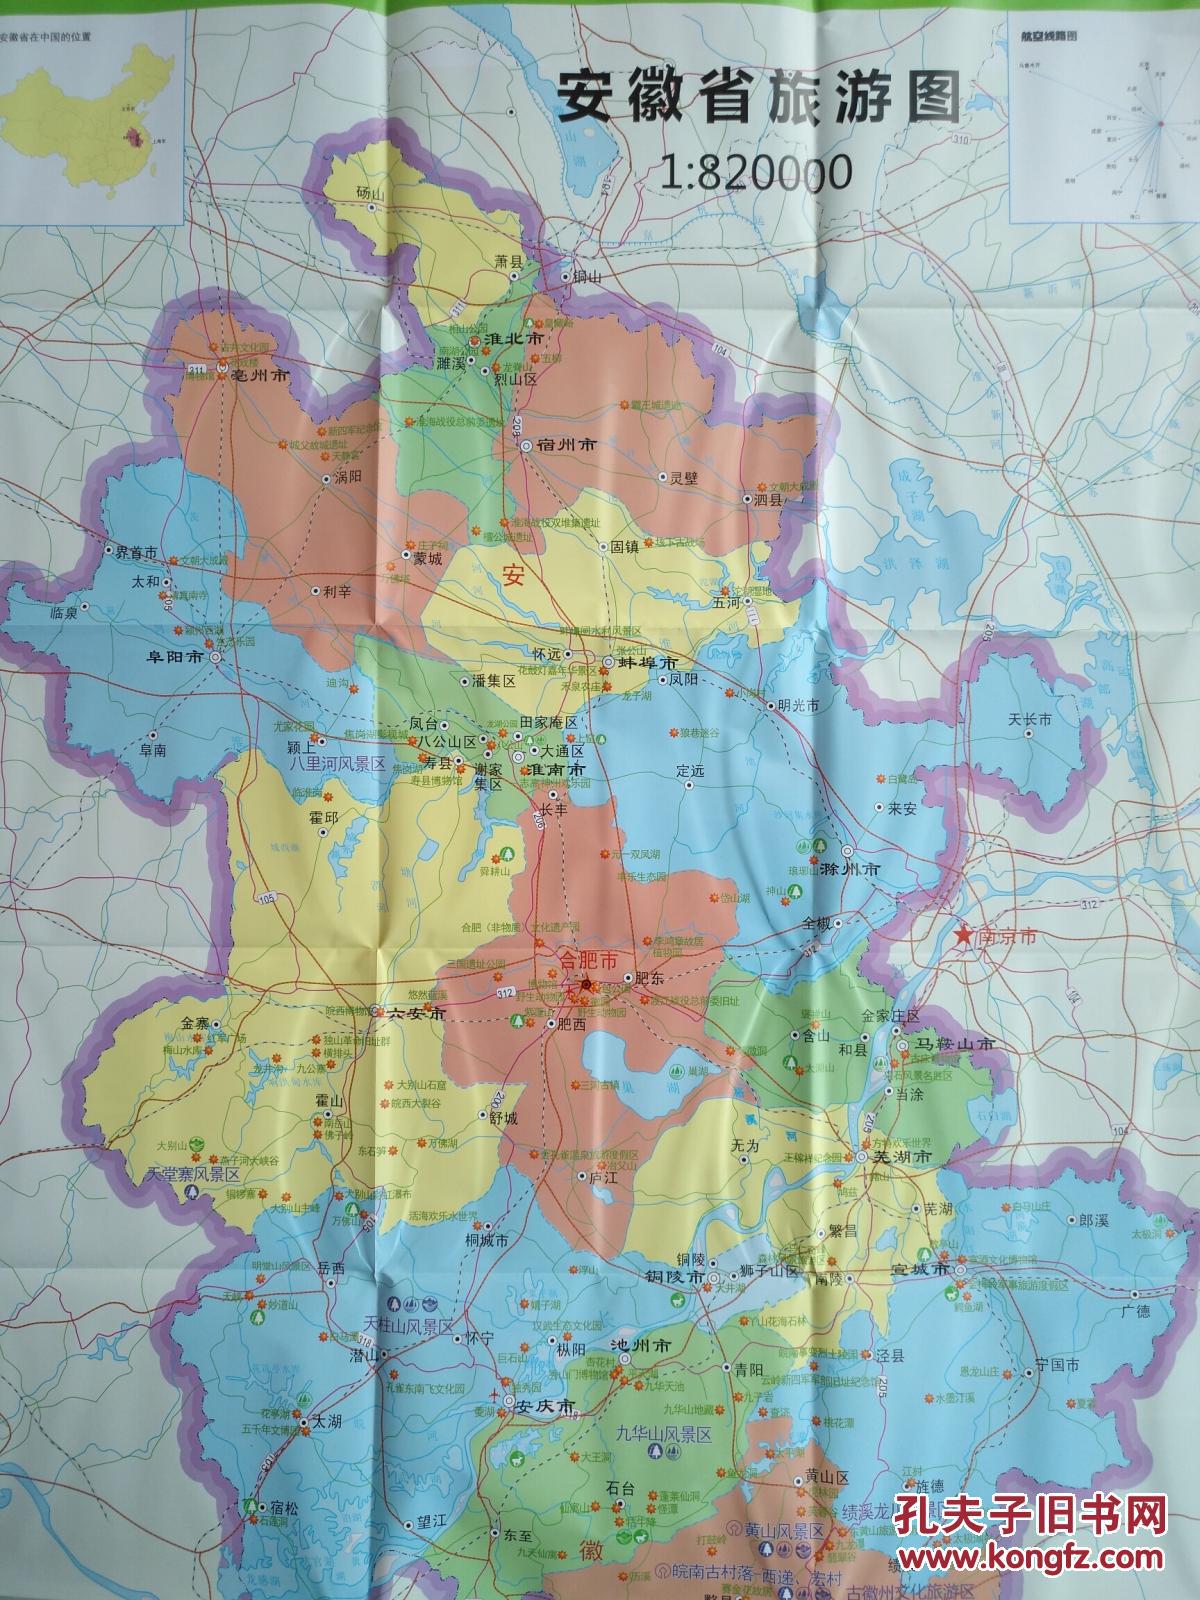 安徽省旅游图 安徽省地图 安徽地图 安徽导游图图片